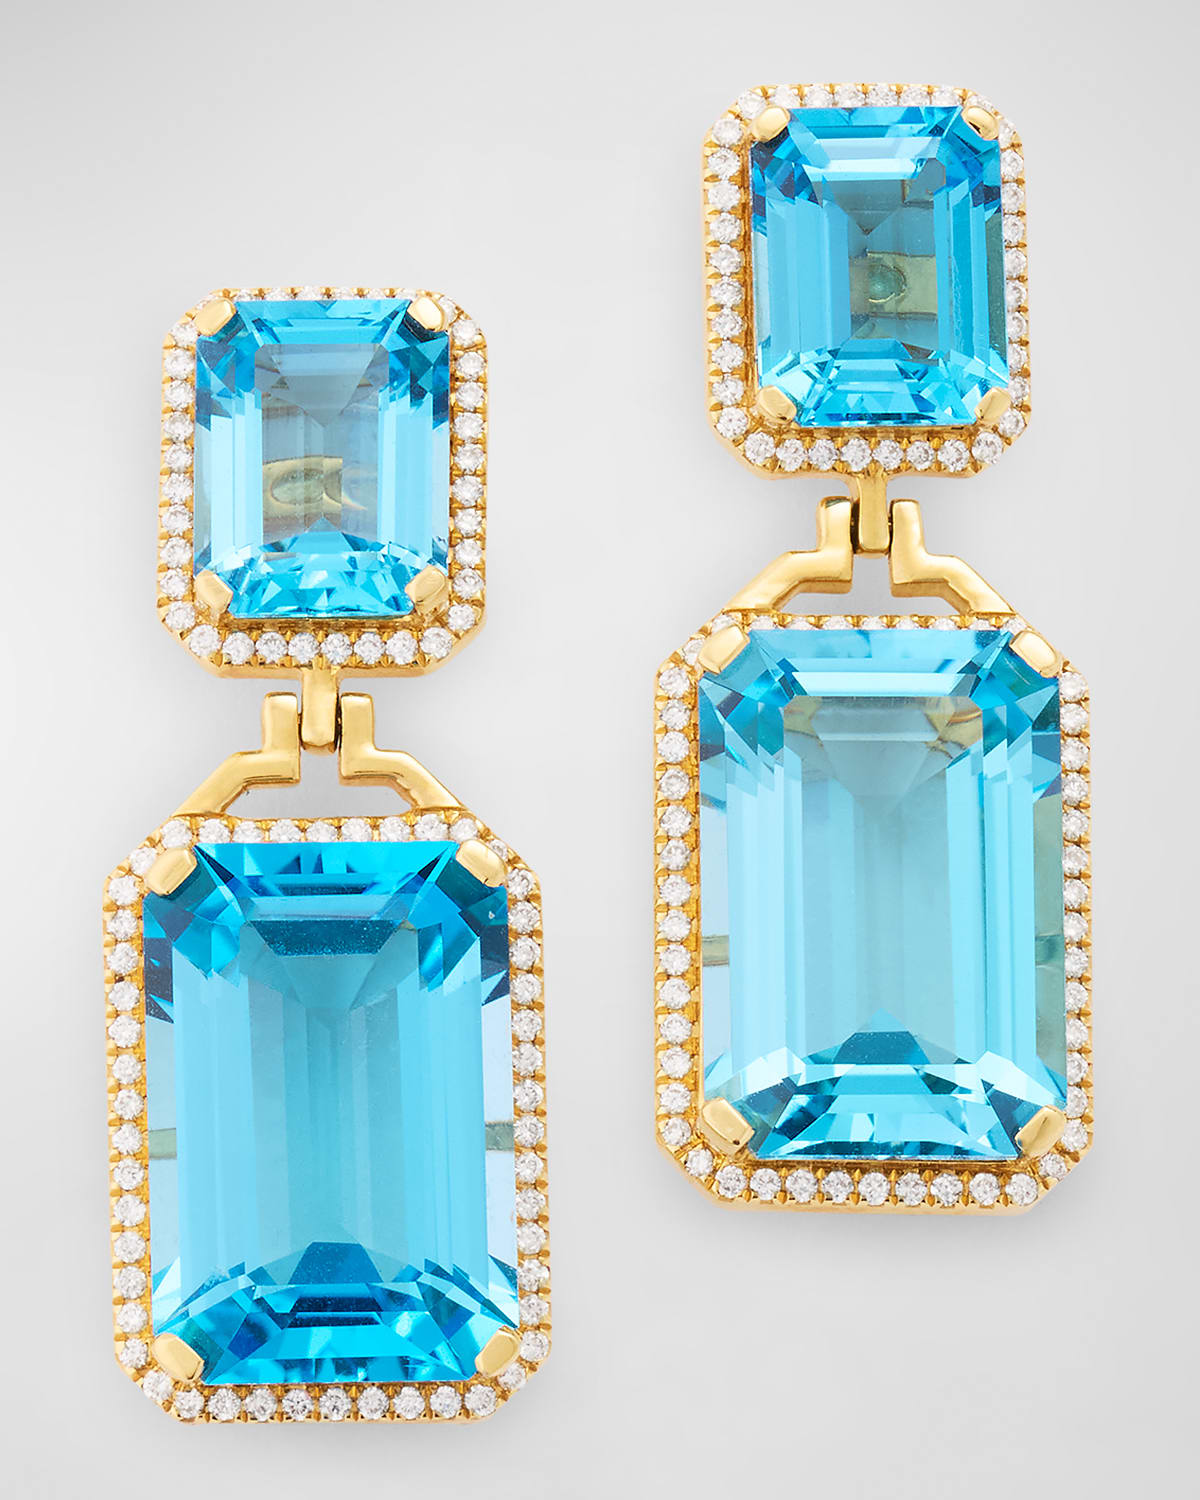 Gossip Emerald-Cut Blue Topaz Diamond Earrings